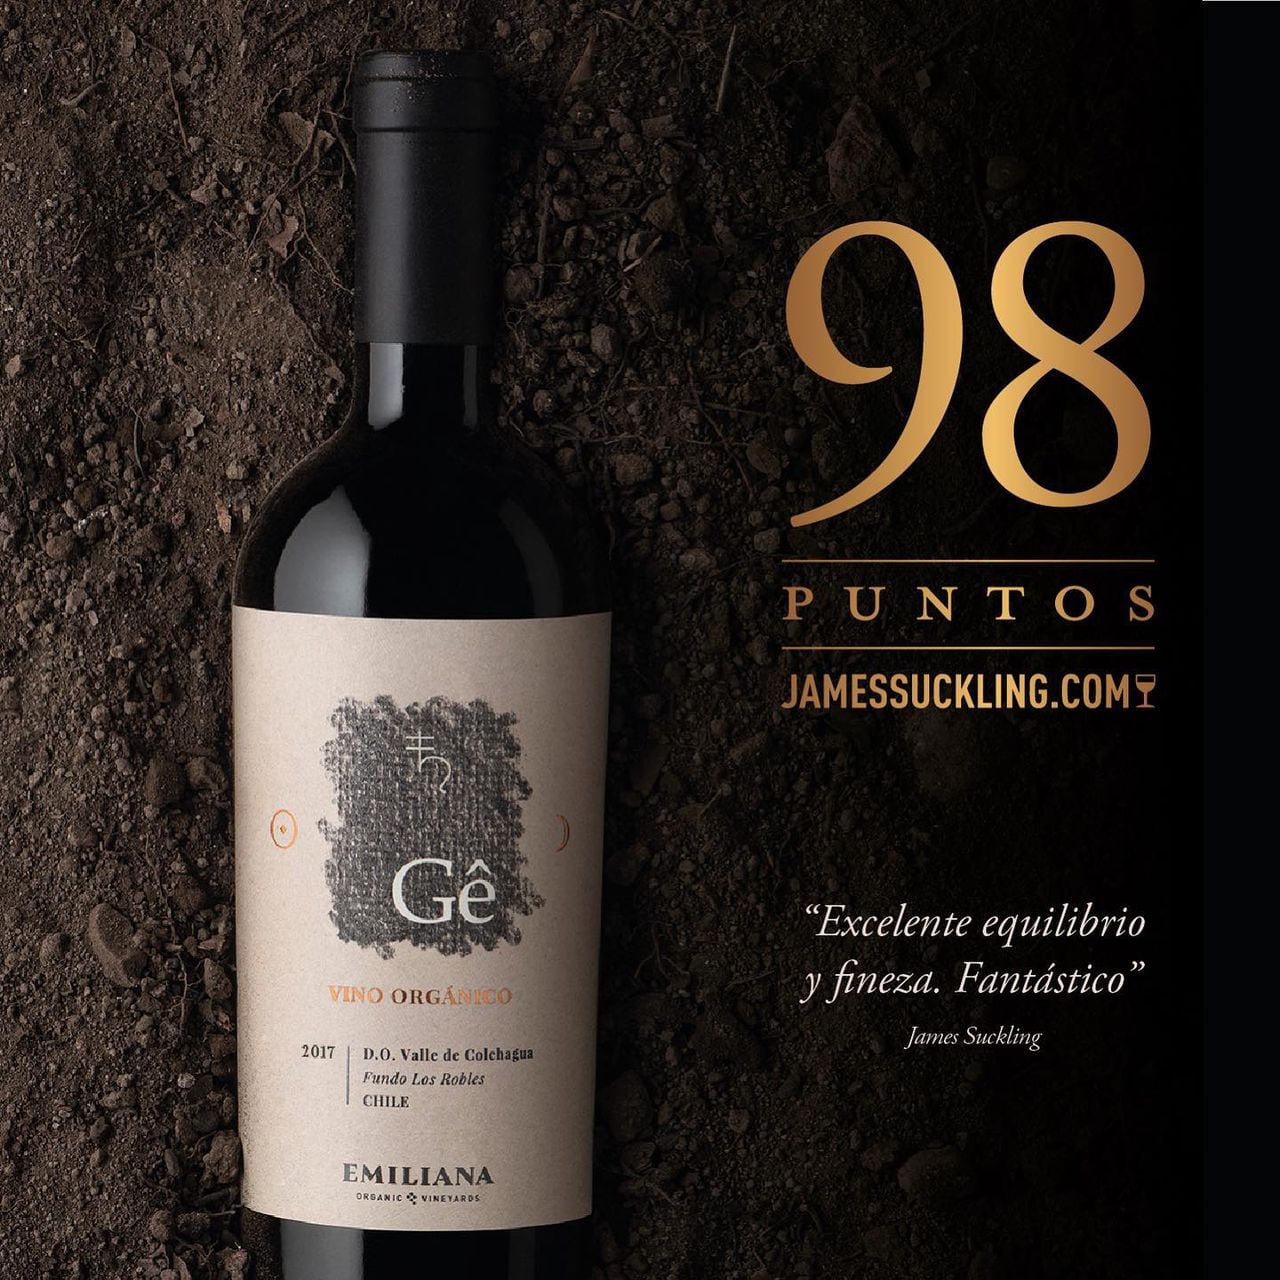 El más ecológico. También de los frutos de las tierras chilenas, el Ultra Premium GE de Emiliana Organic Vineyards, destacado por su producción ecológica.